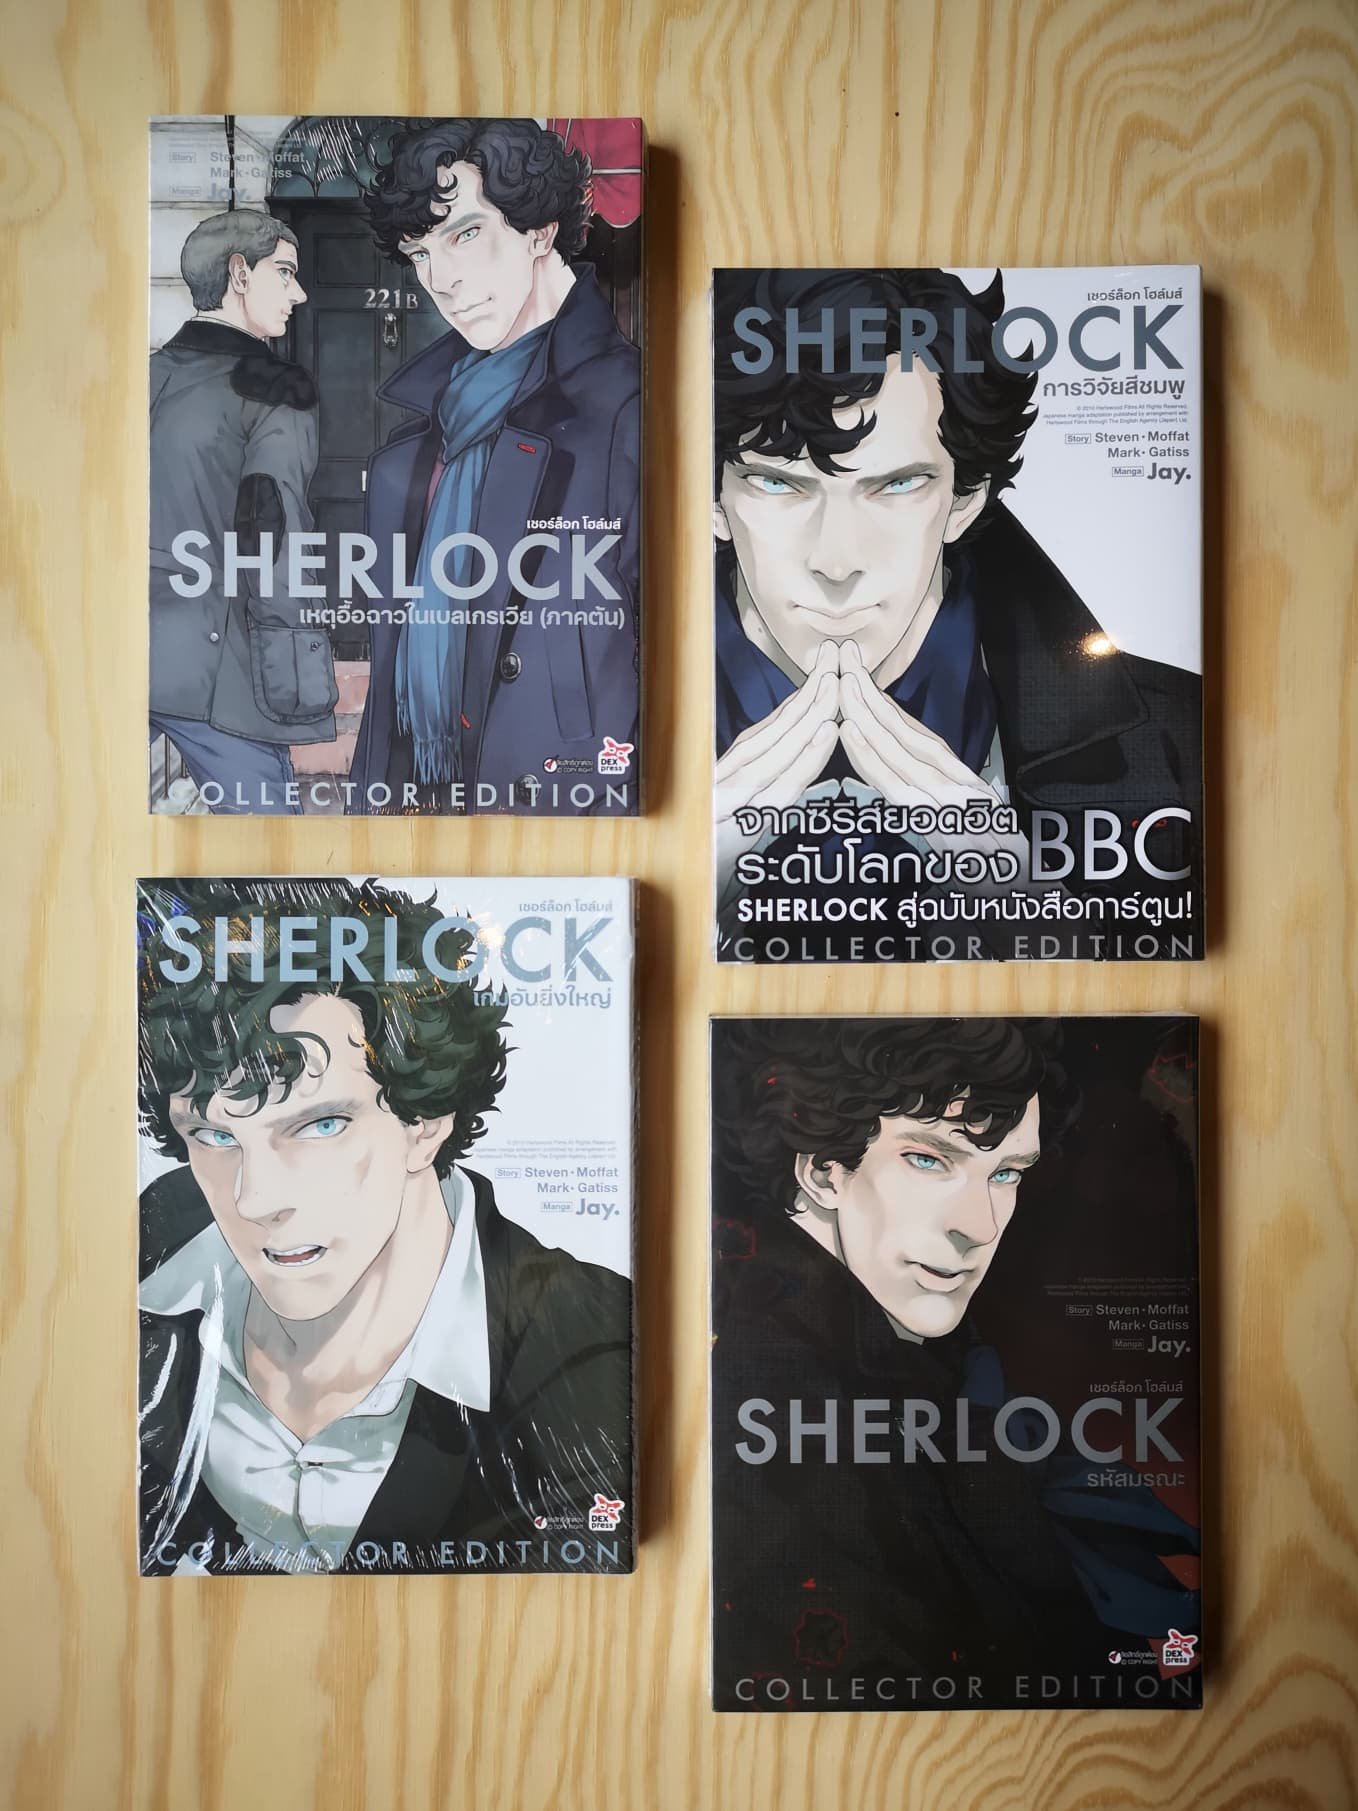 [การ์ตูน] เชอร์ล็อก โฮล์มส์  Sherlock Holmes เซต collector edition  4 เล่ม / Steven Moffat Mark Gatiss